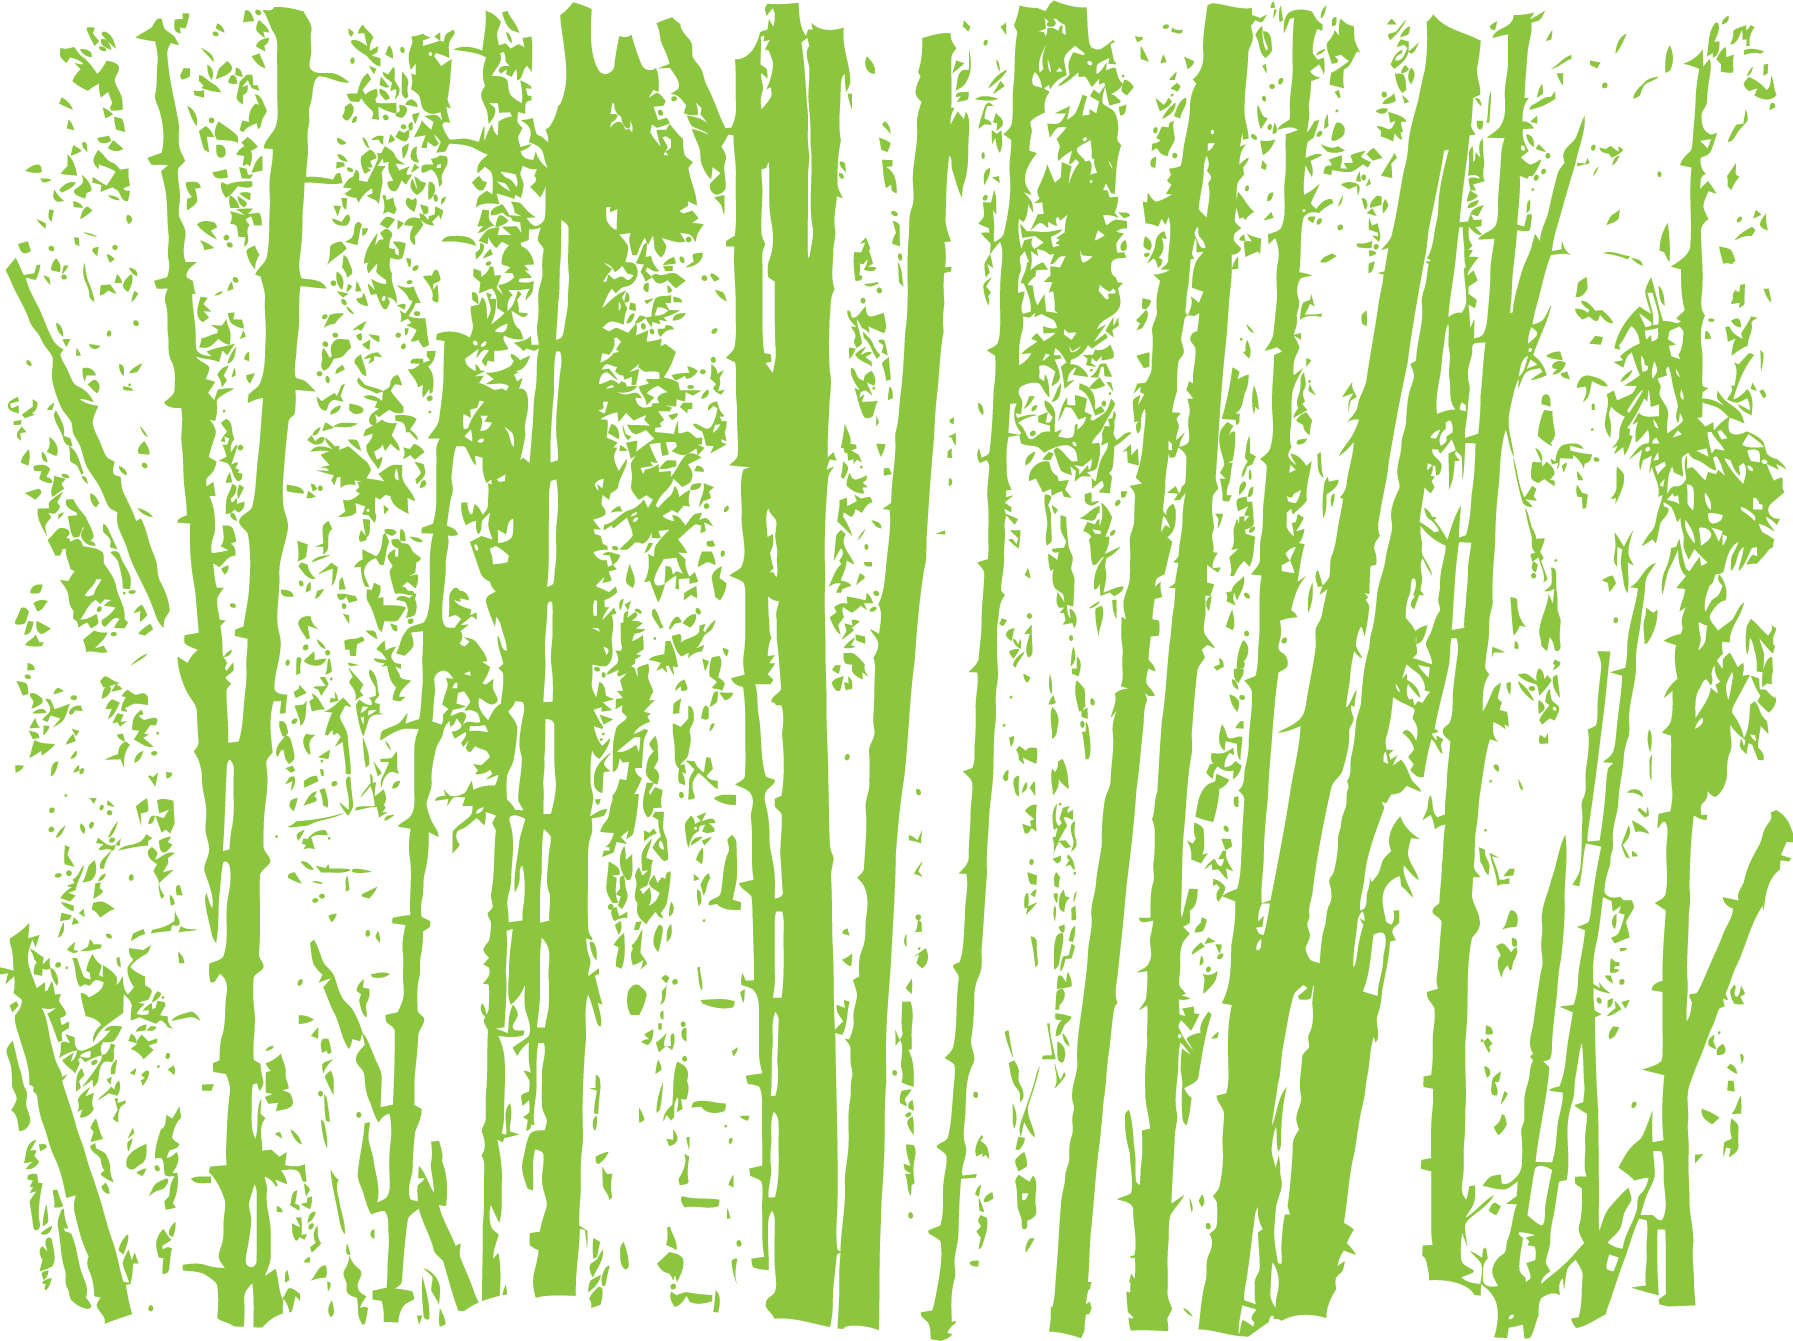 葉っぱや草木のイラスト 画像 フリー素材 No 248 竹林イメージ